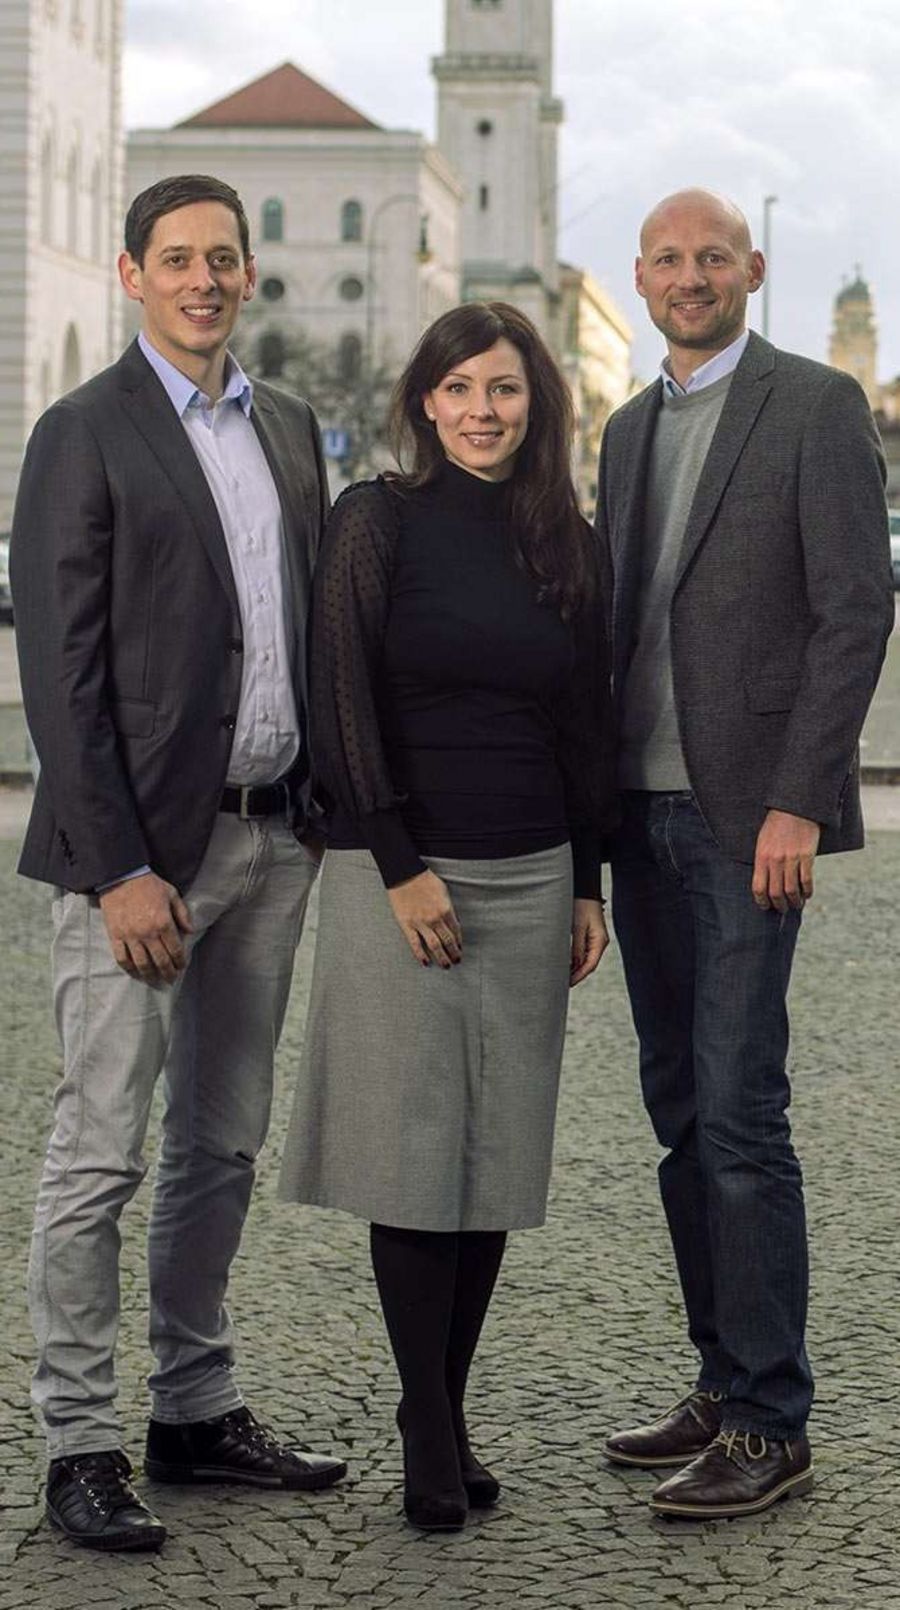 Das Gründerteam: Nico Polleti, Christina Polleti sowie Andreas Schuierer